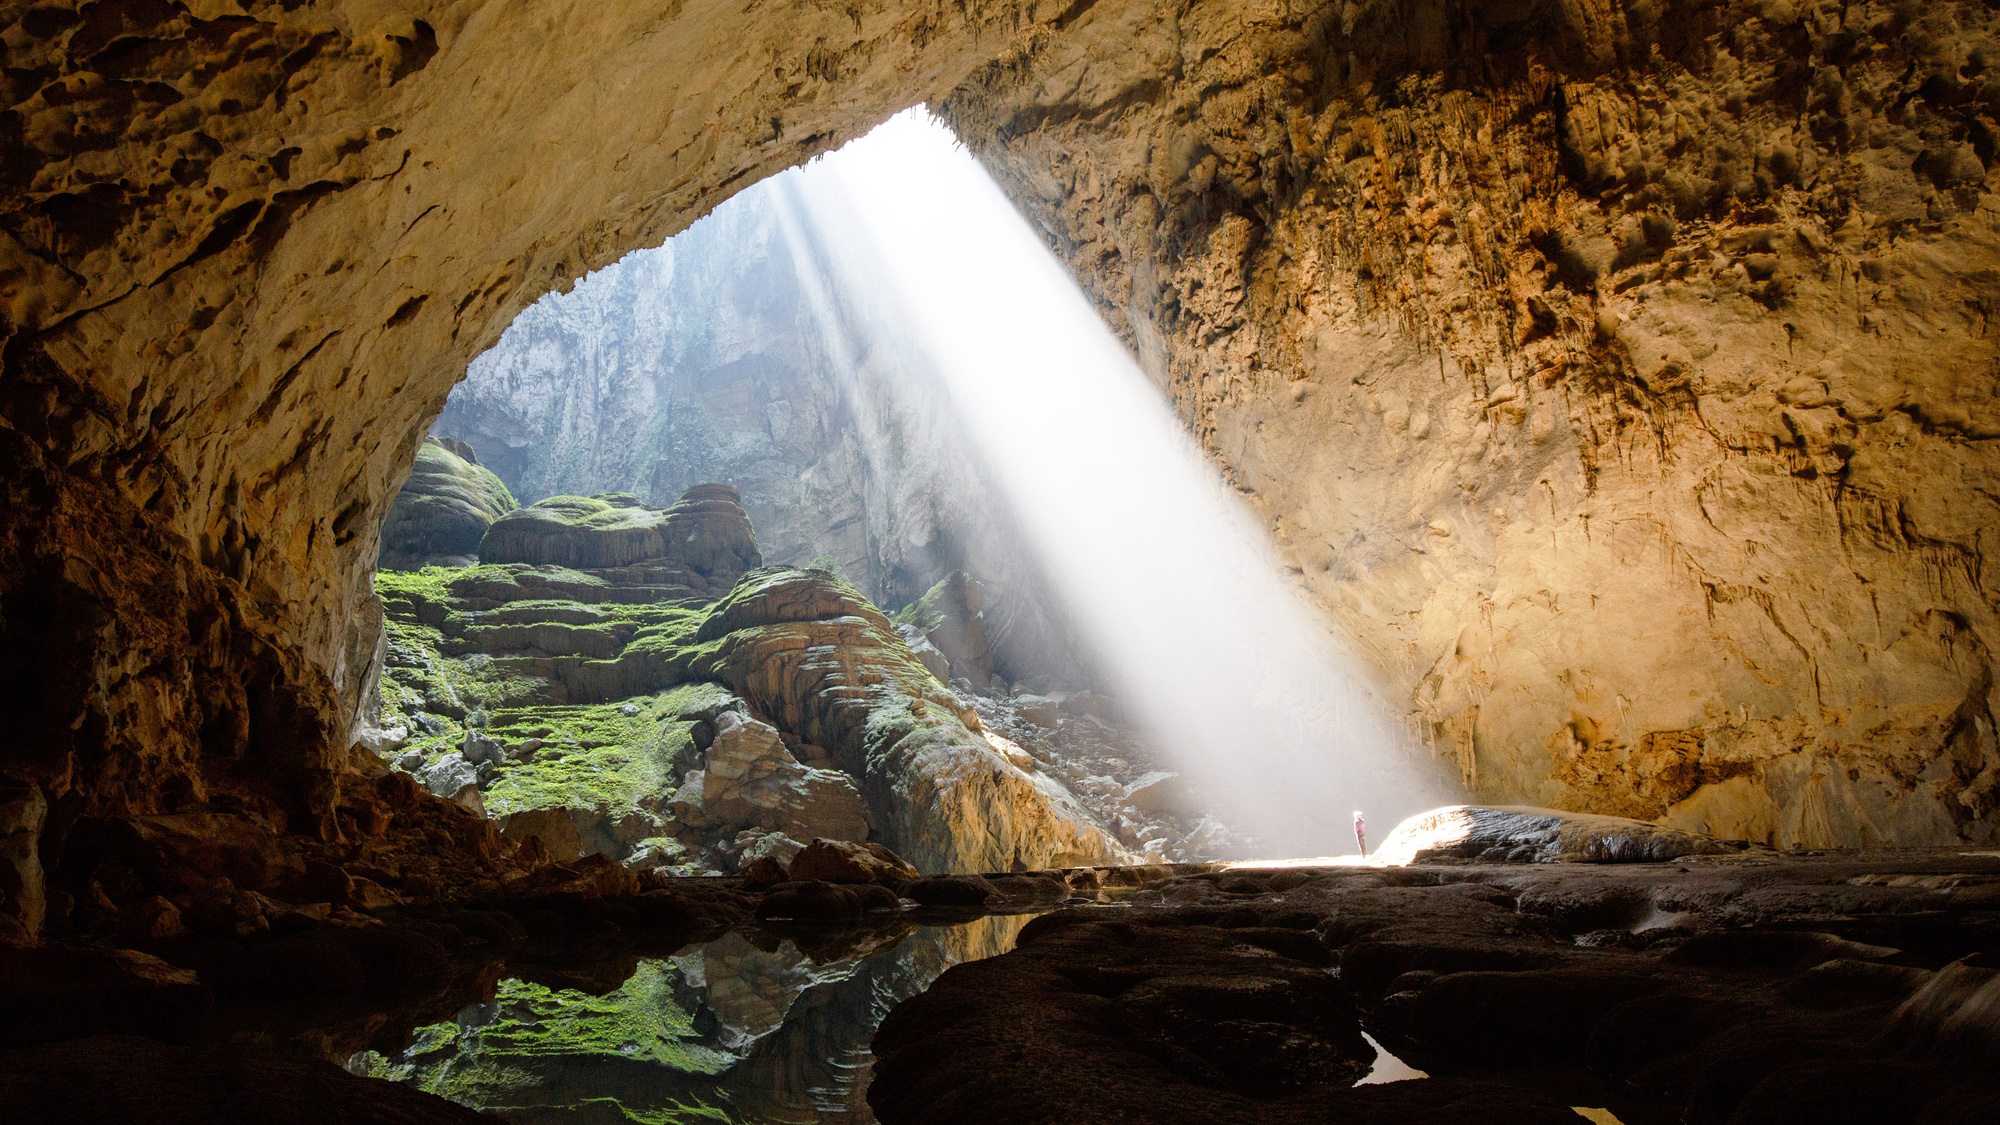 Hang động Sơn Đoòng - Khám phá hành trình kỳ lạ đến hang động lớn nhất thế giới - Sơn Đoòng. Hình ảnh sẽ đưa bạn chìm đắm trong những lộng lẫy kỳ vĩ của hành trình này, từ những thác nước và khe thở độc đáo, đến những khối đá bí ẩn cao hơn 70m. Điều này làm cho địa điểm này không chỉ là một trong những kì quan tự nhiên của thế giới mà còn là nơi bạn hằng mong ước đến thăm.